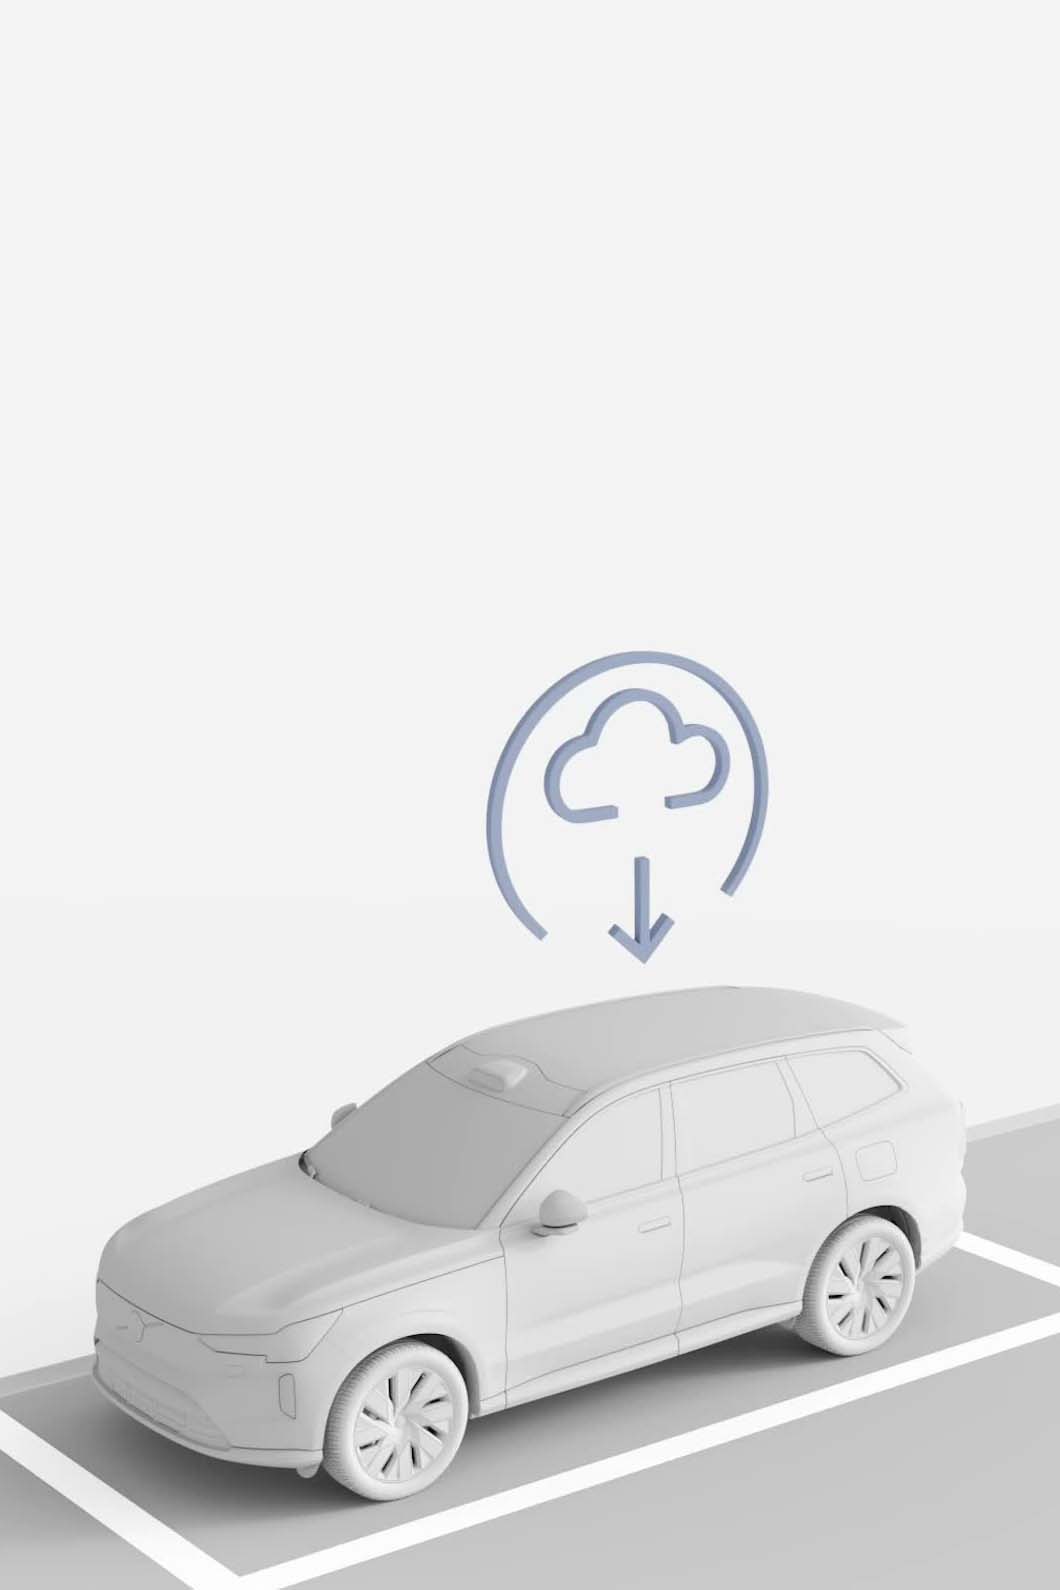 Illustration eines Volvos, der ein Software-Update aus der Cloud erhält.